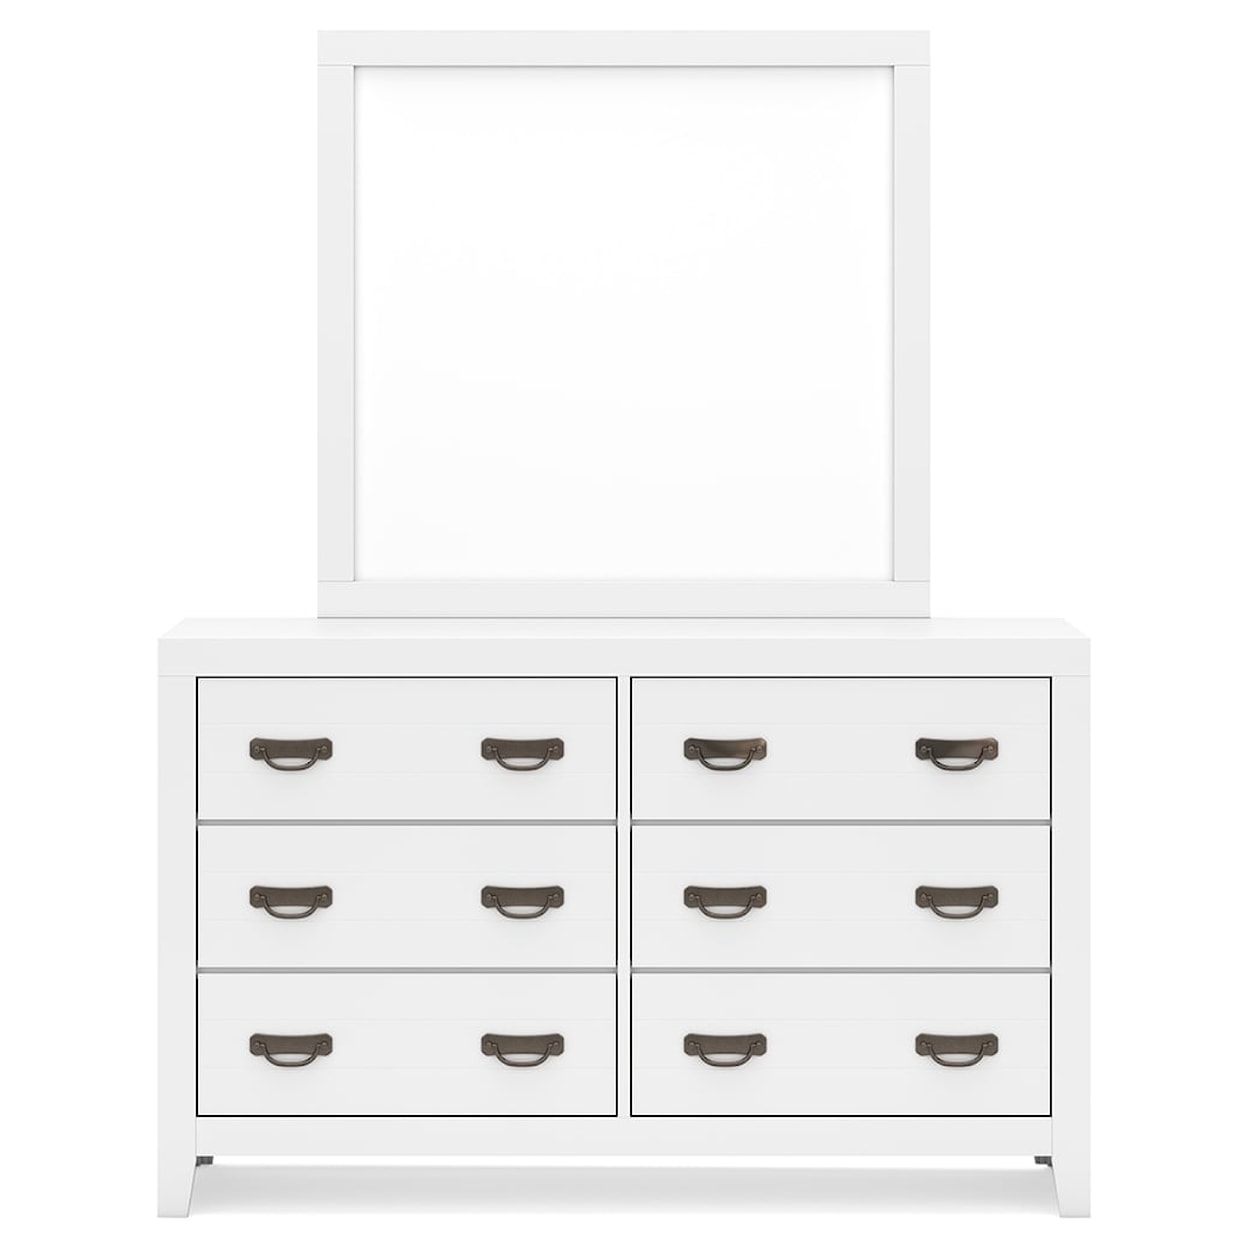 Ashley Furniture Signature Design Binterglen Dresser and Mirror